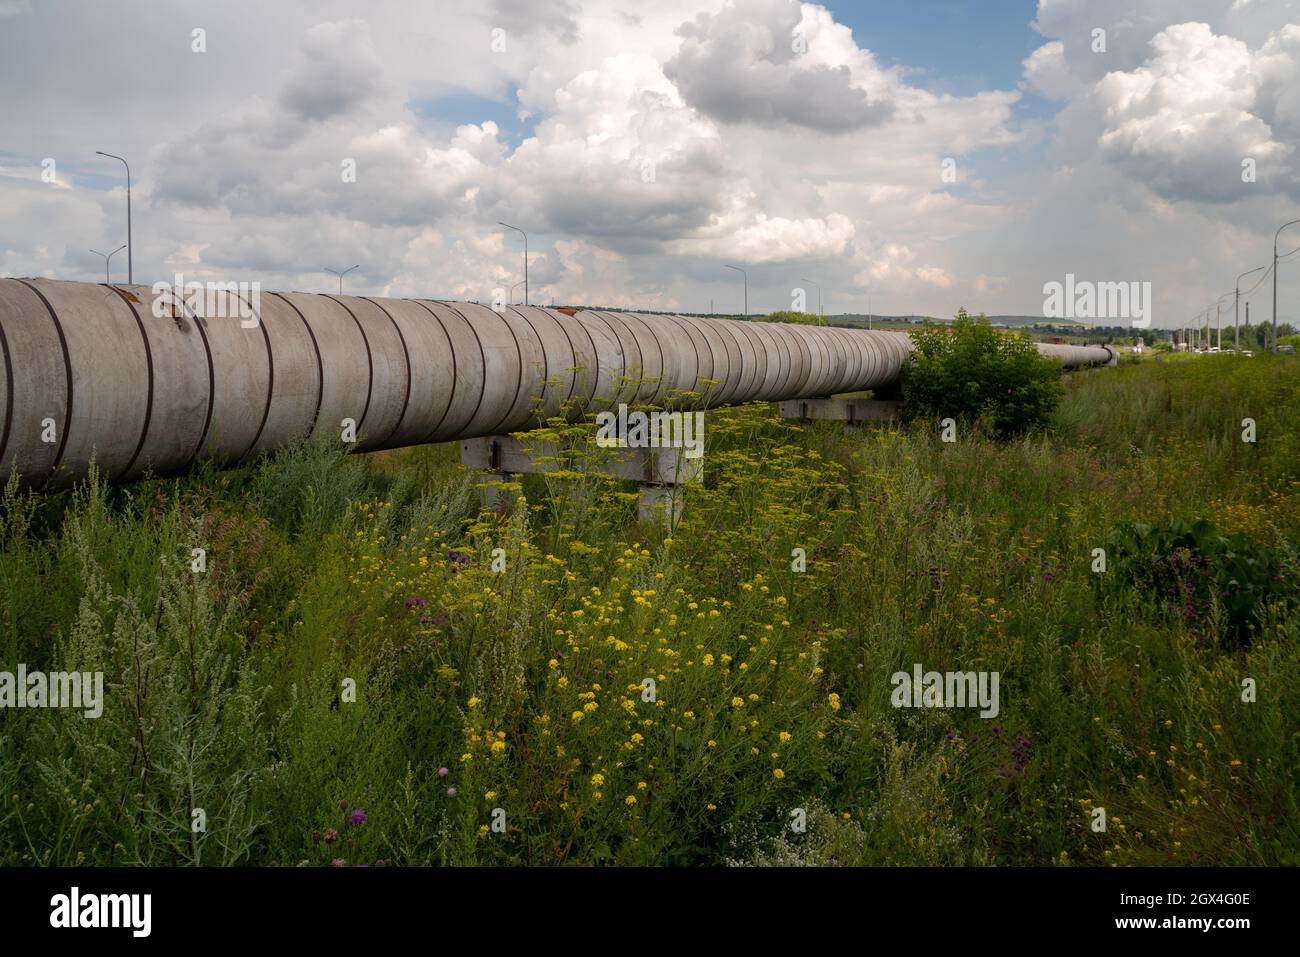 Il gasdotto della rete principale di riscaldamento a terra su un supporto in cemento armato tra l'erba in una giornata estiva soleggiata. Foto Stock